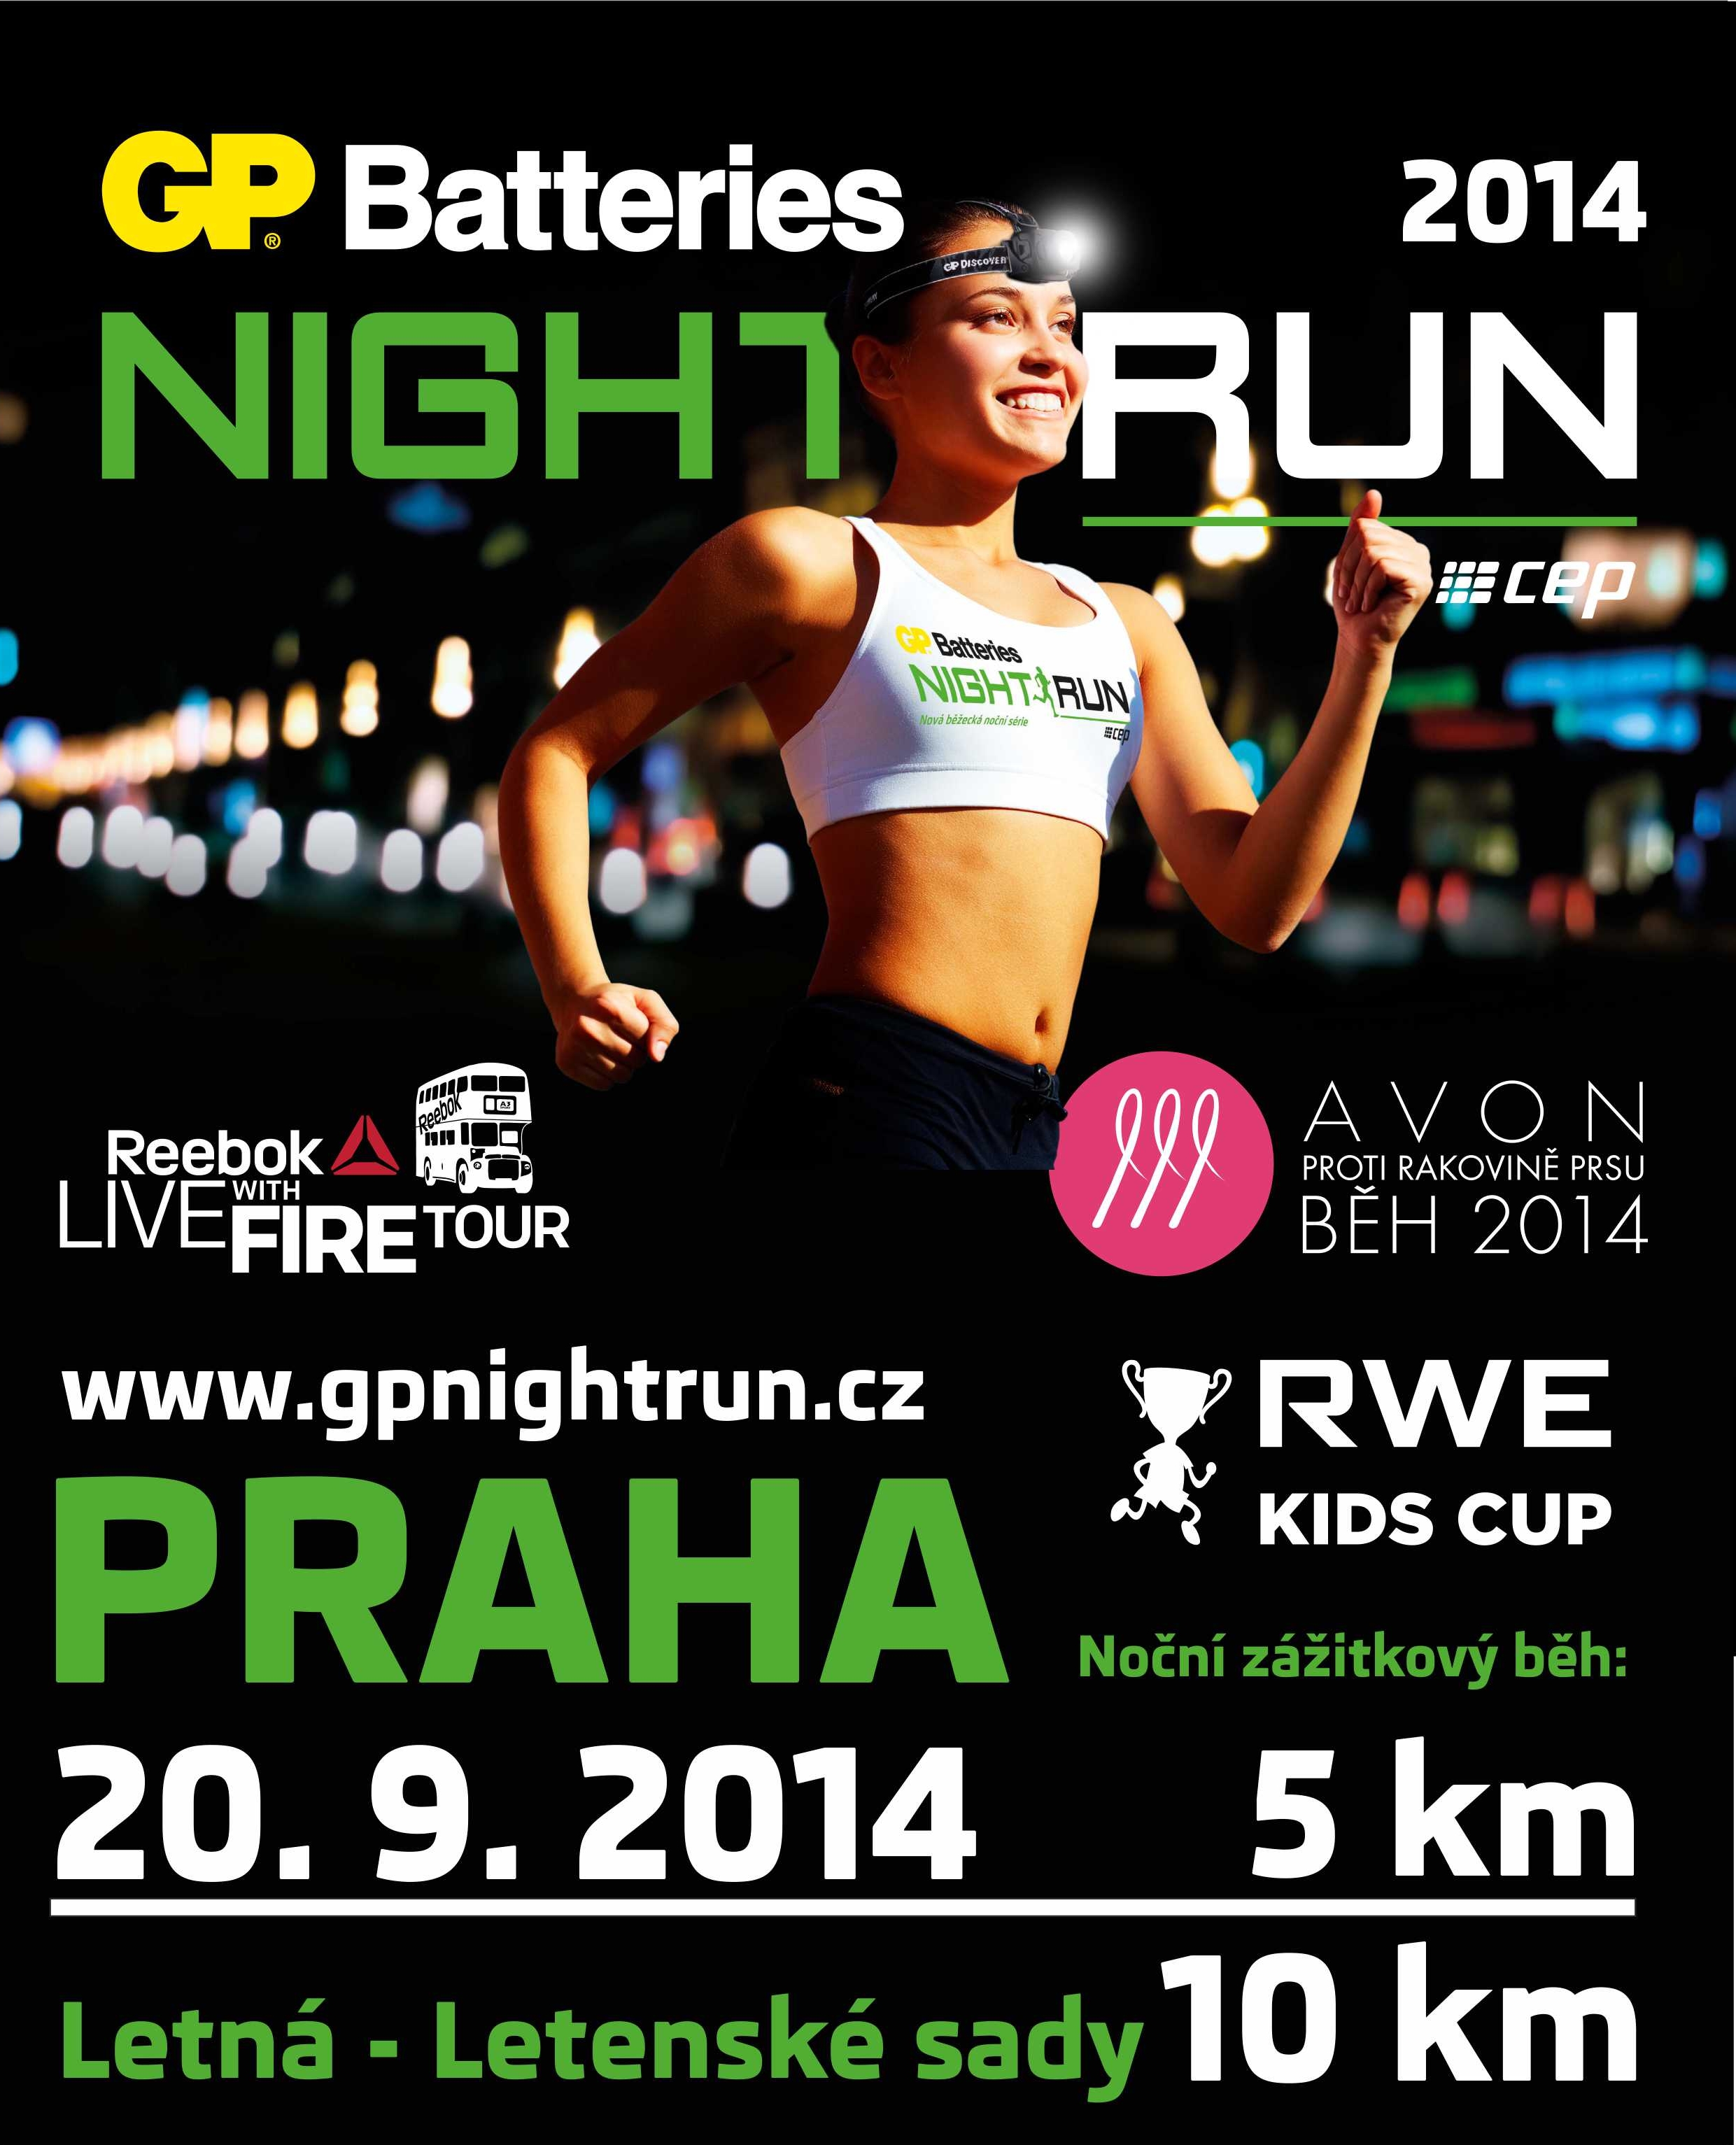 Night run 2014